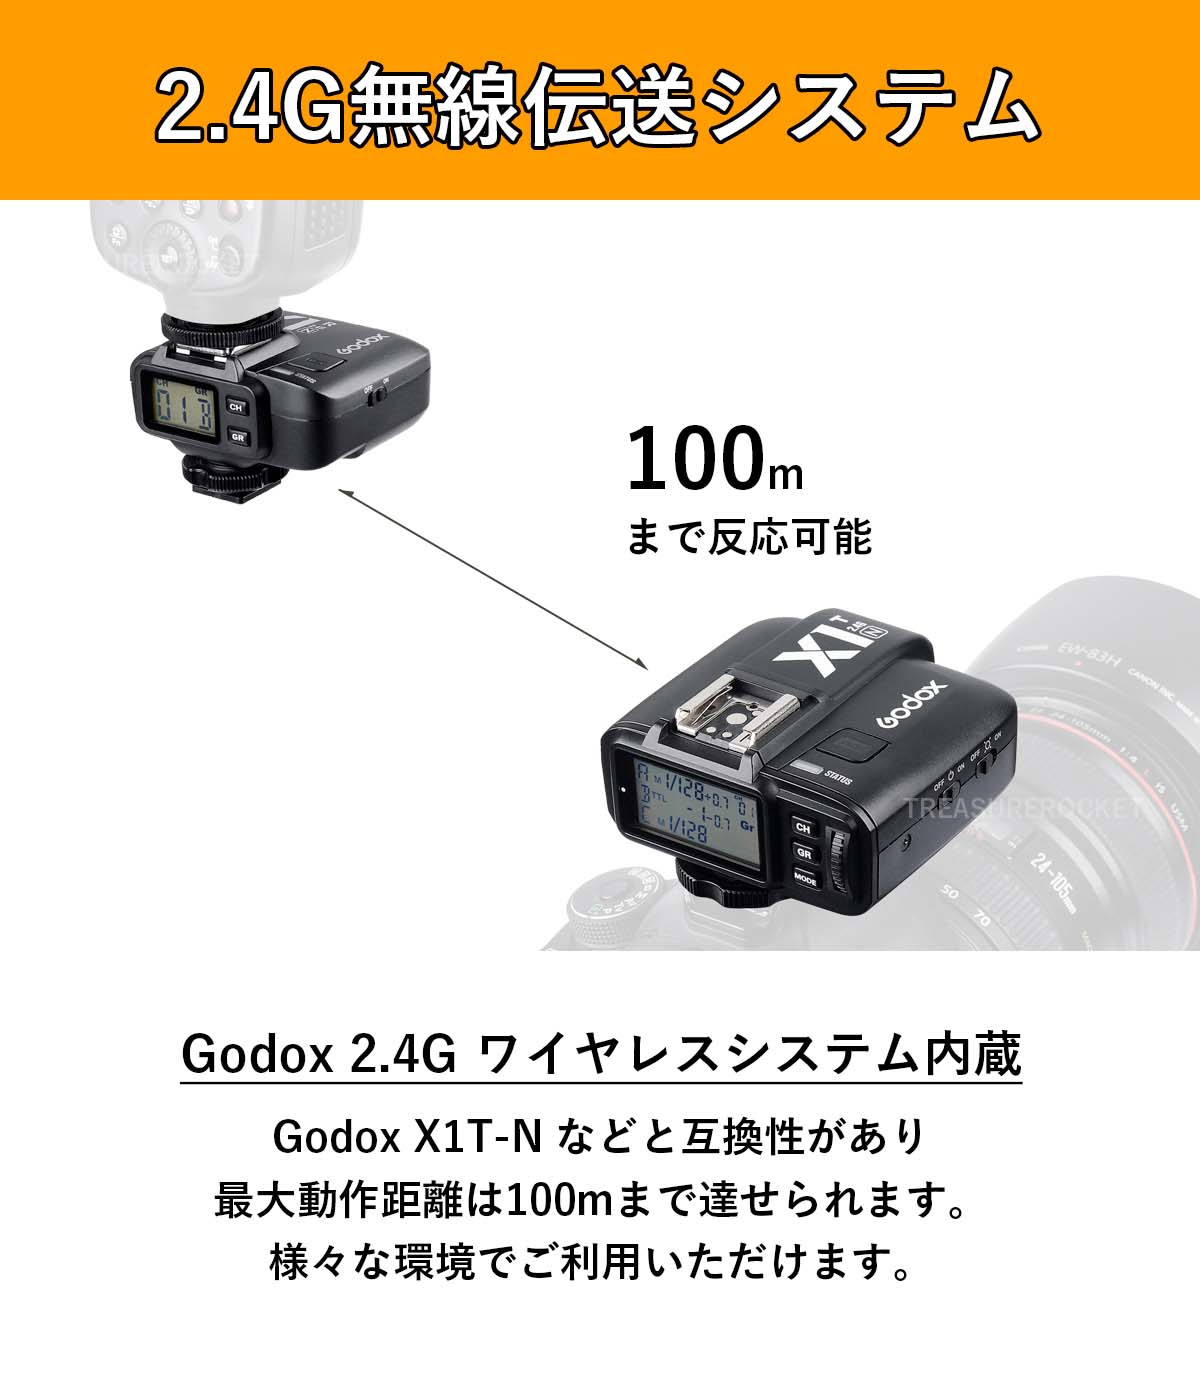 日本正規代理店 Godox X1R-N X1 X1RN ワイヤレス 受信機 レシーバー Nikon ニコン 対応